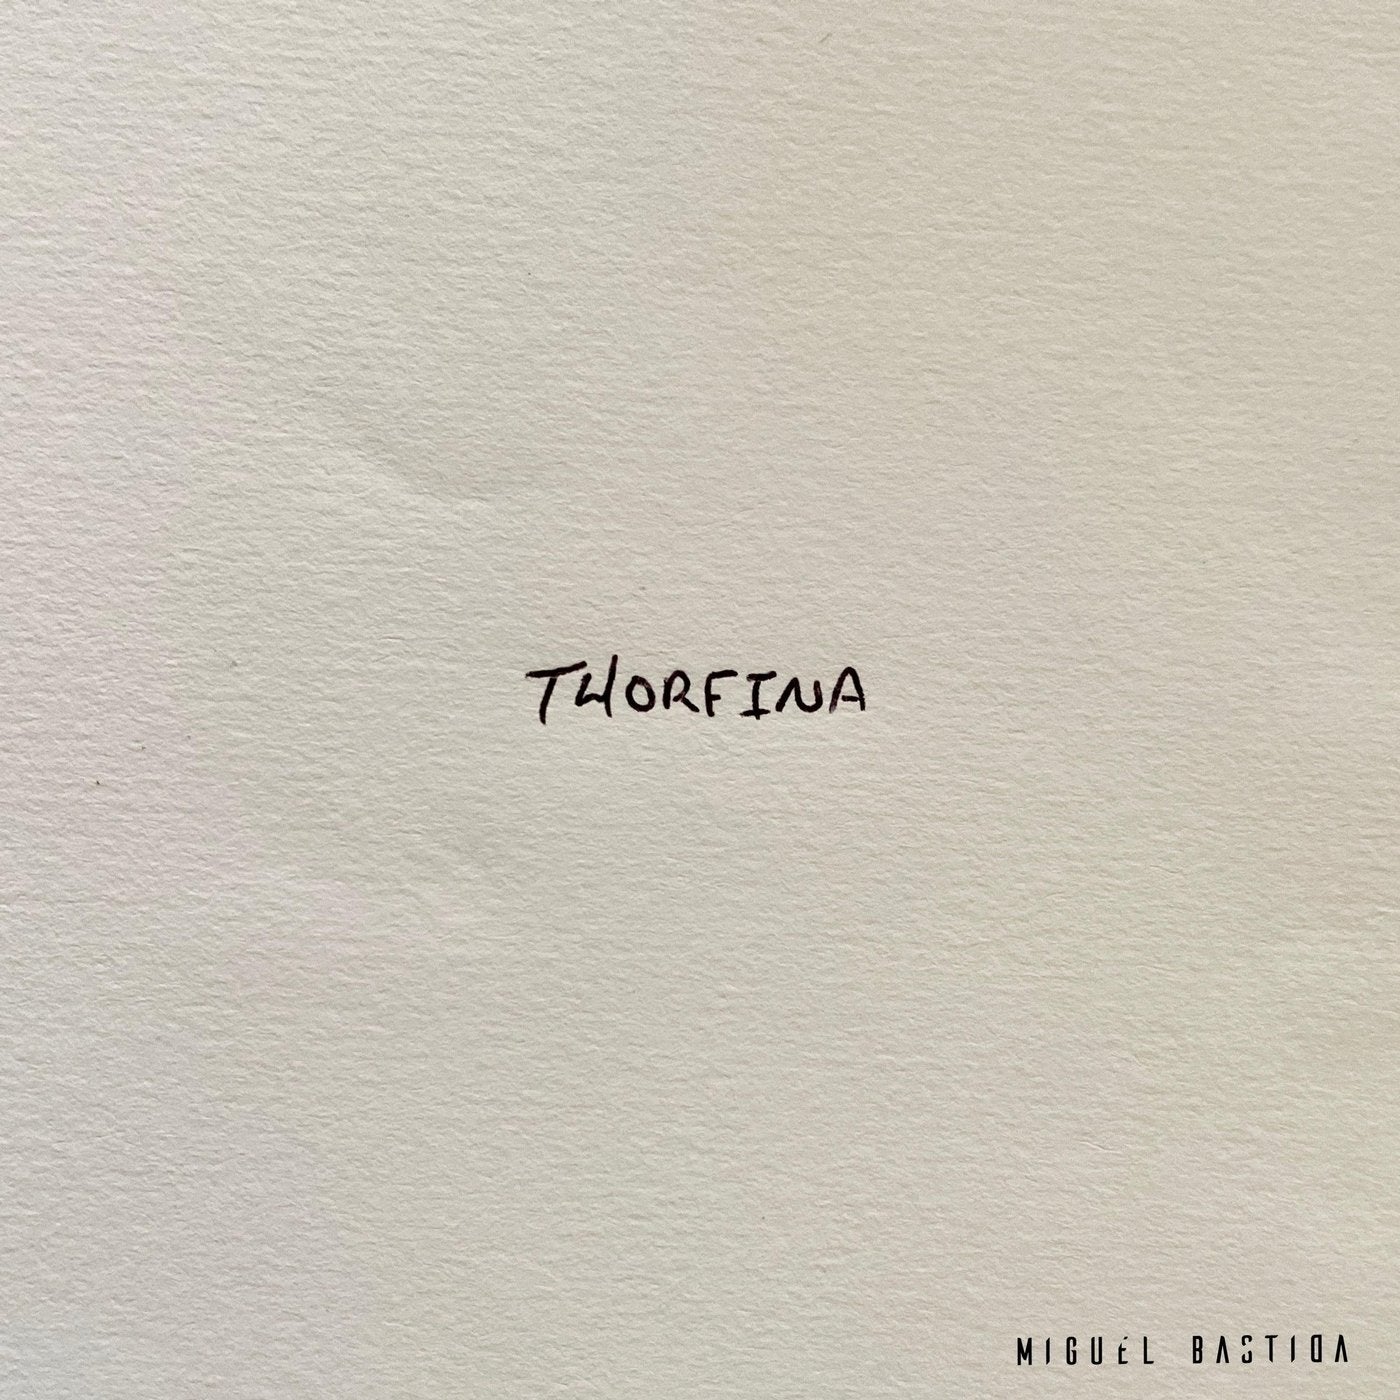 Thorfina